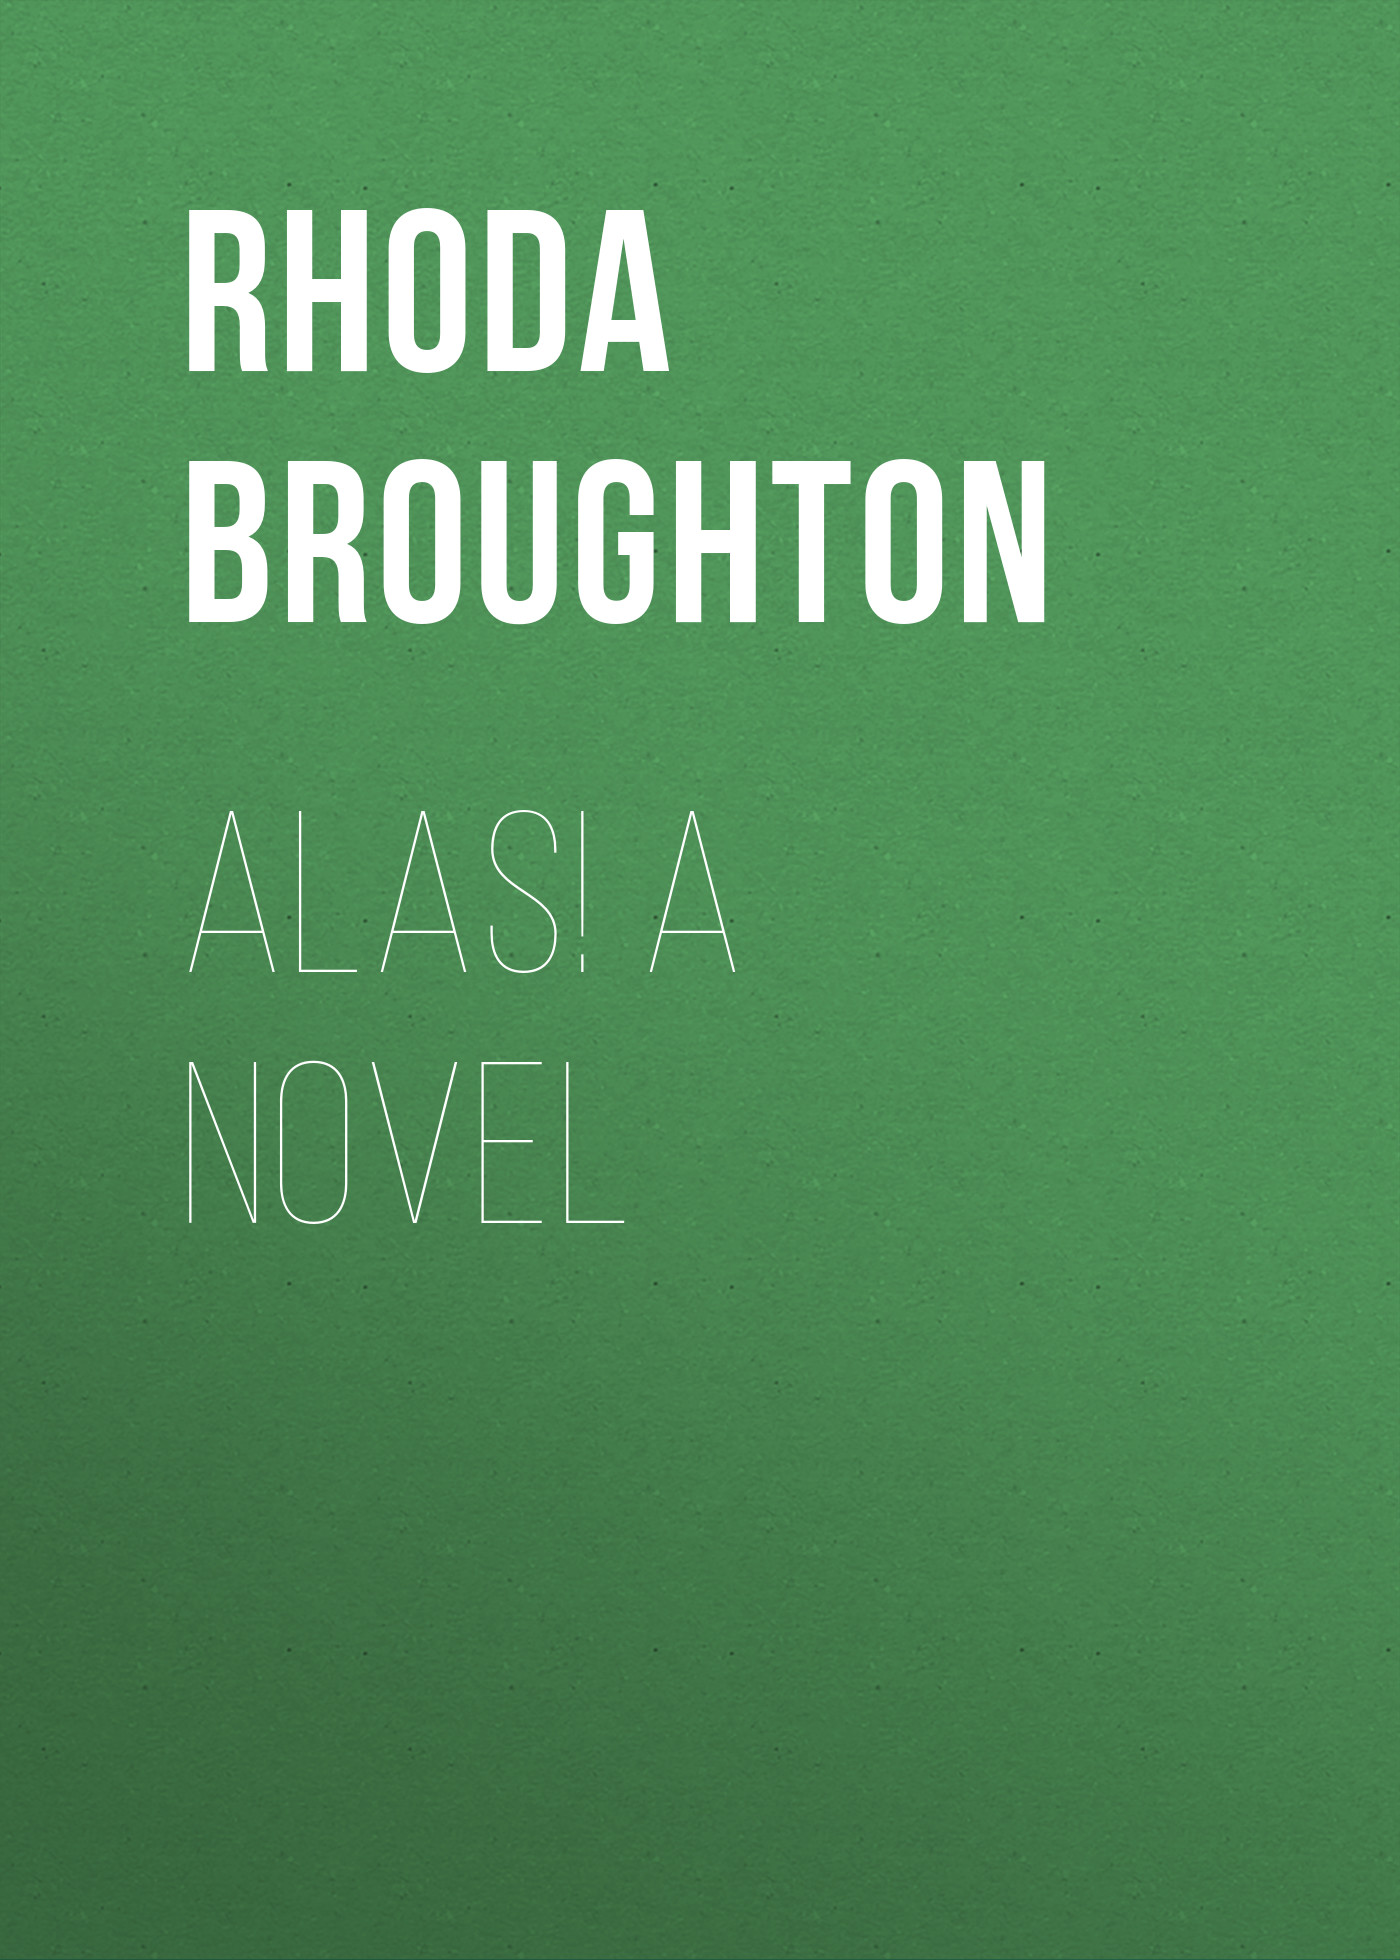 Книга Alas! A Novel из серии , созданная Rhoda Broughton, может относится к жанру Зарубежная старинная литература, Зарубежная классика. Стоимость электронной книги Alas! A Novel с идентификатором 24172988 составляет 0.90 руб.